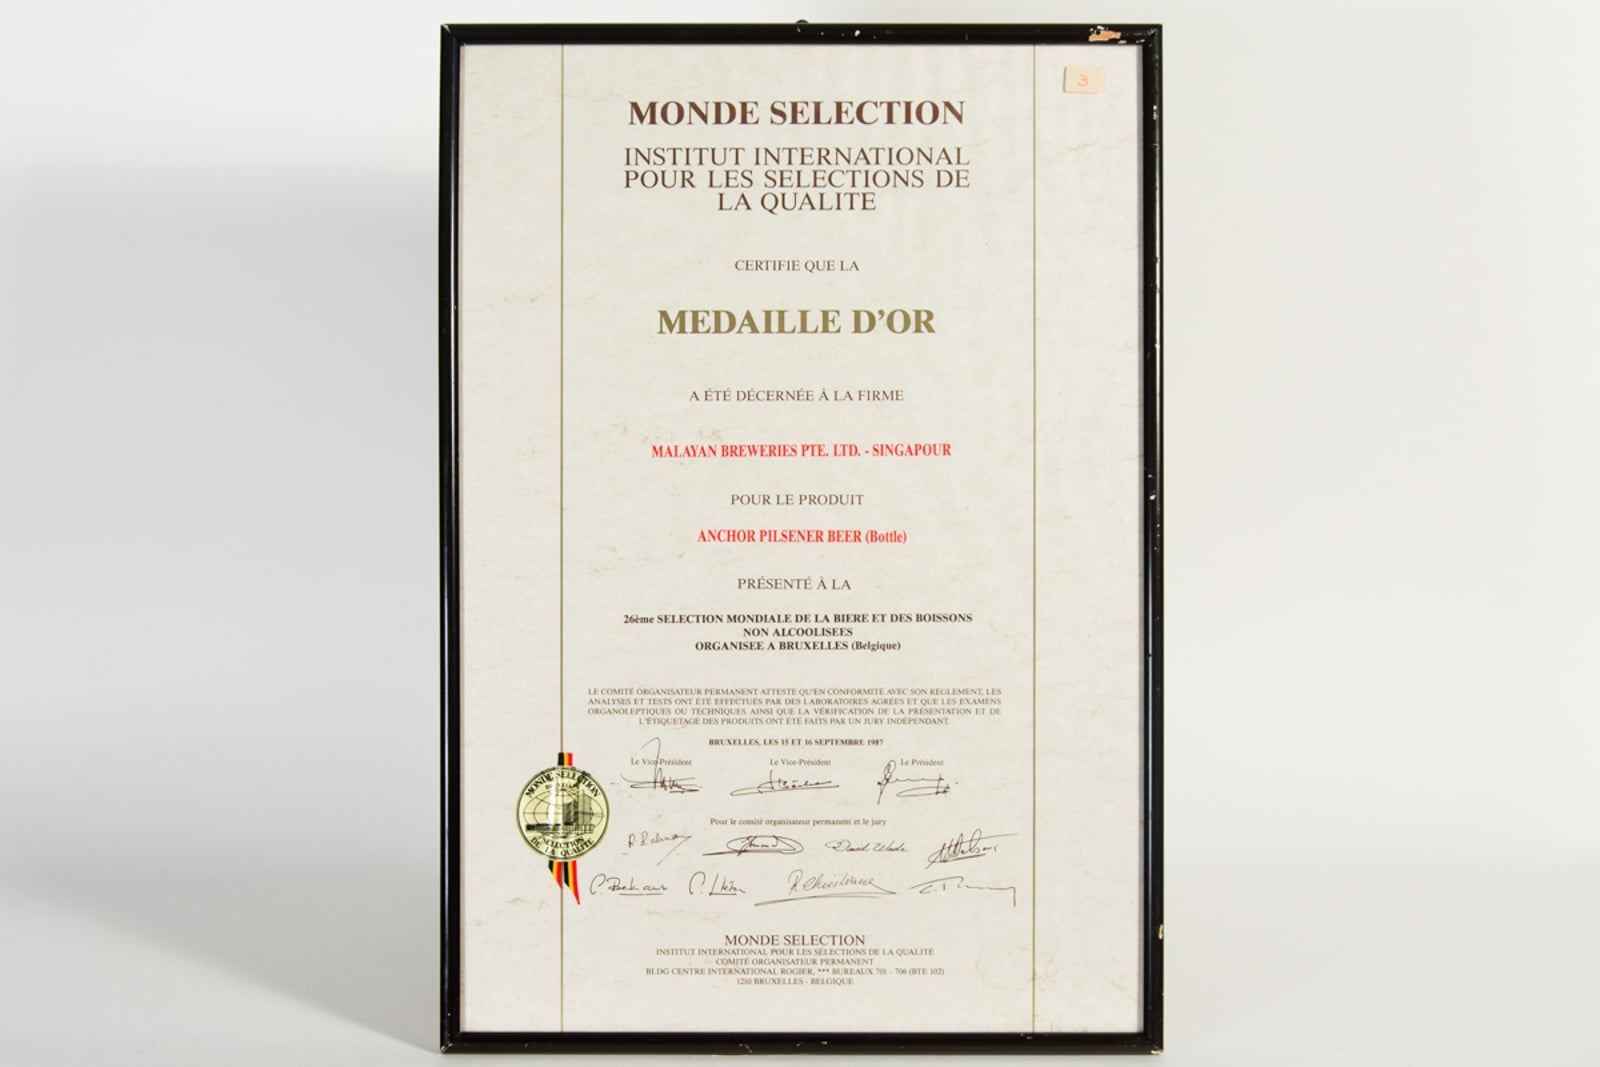 Anchor Pilsner Beer (Bottle) Médaille d'Or, Monde Selection Certificate 1987